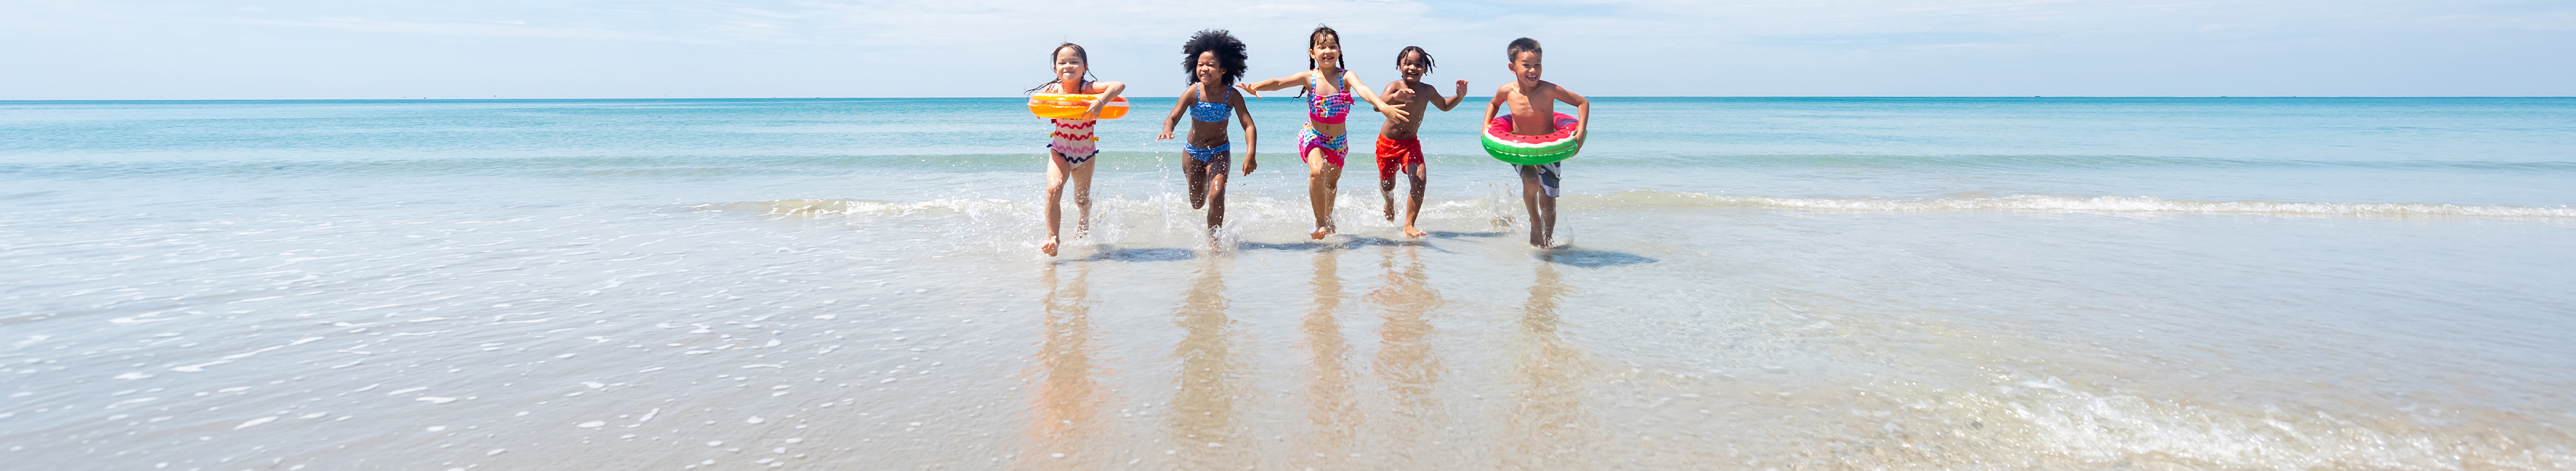 Fünf Kinder rennen am Strand aus dem Wasser